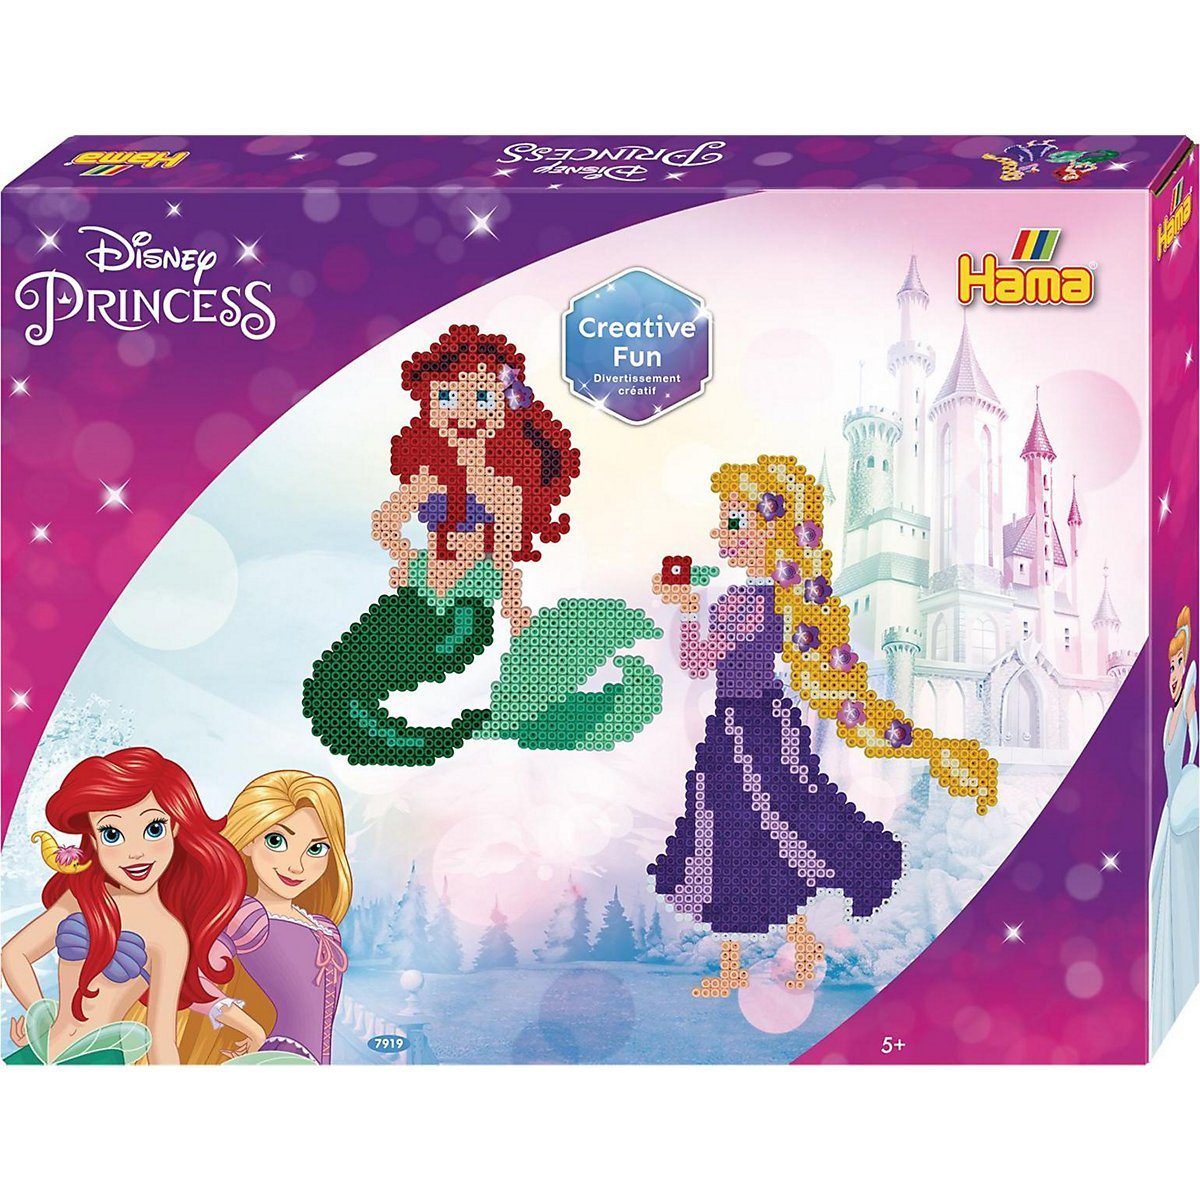 Hama Perlen Bügelperlen »HAMA 7919 Geschenkpackung Disney Princess Frozen«  online kaufen | OTTO